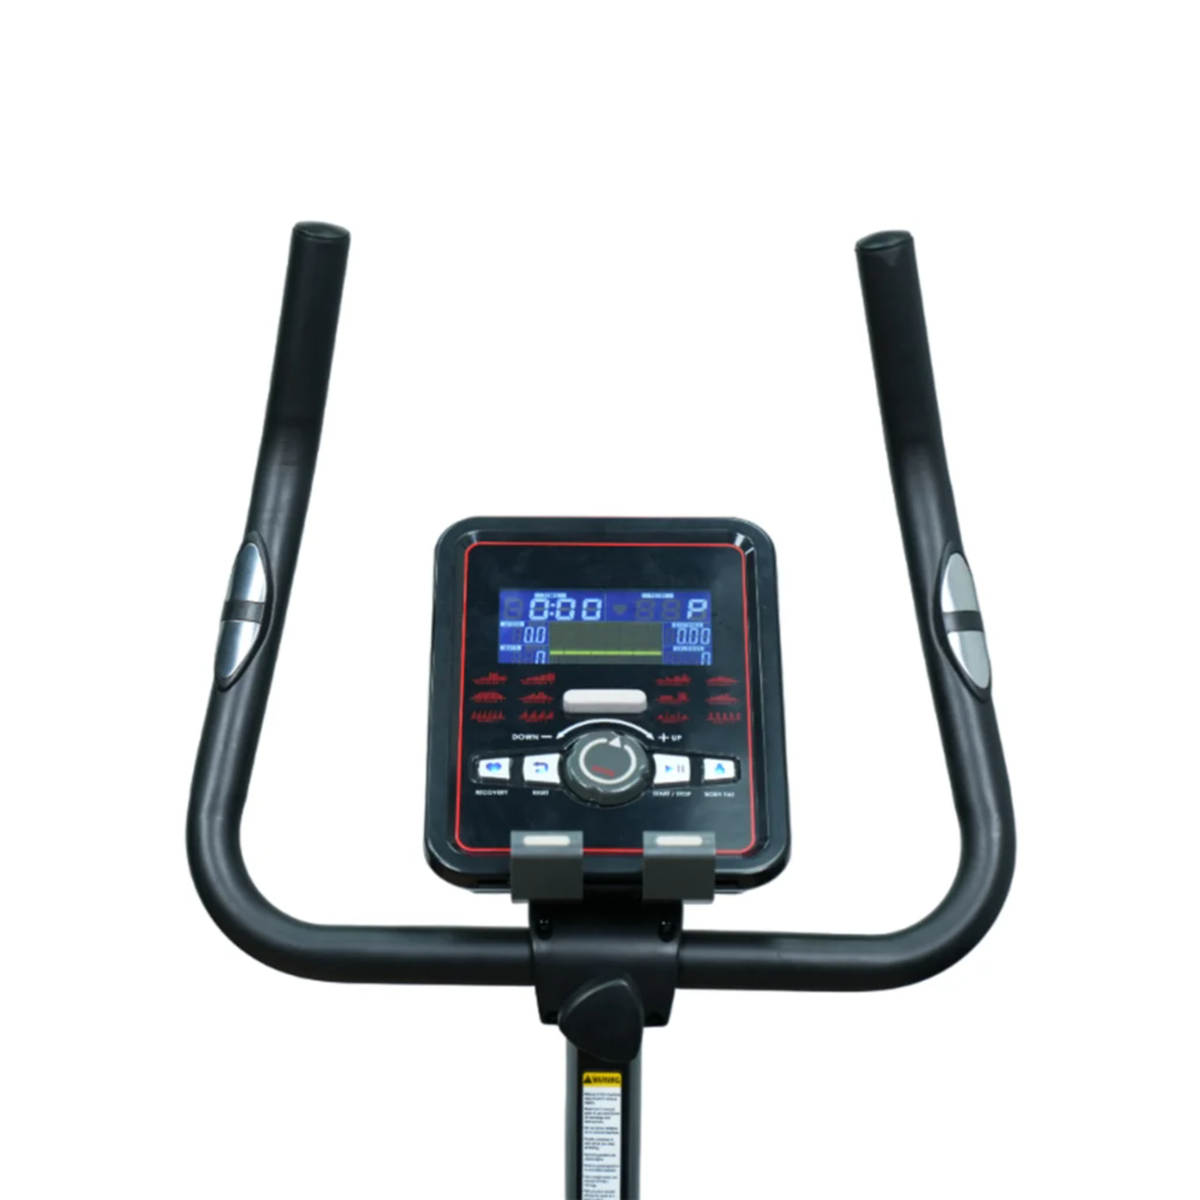 Axox Fitness Upright Bike U30, AXU-U30